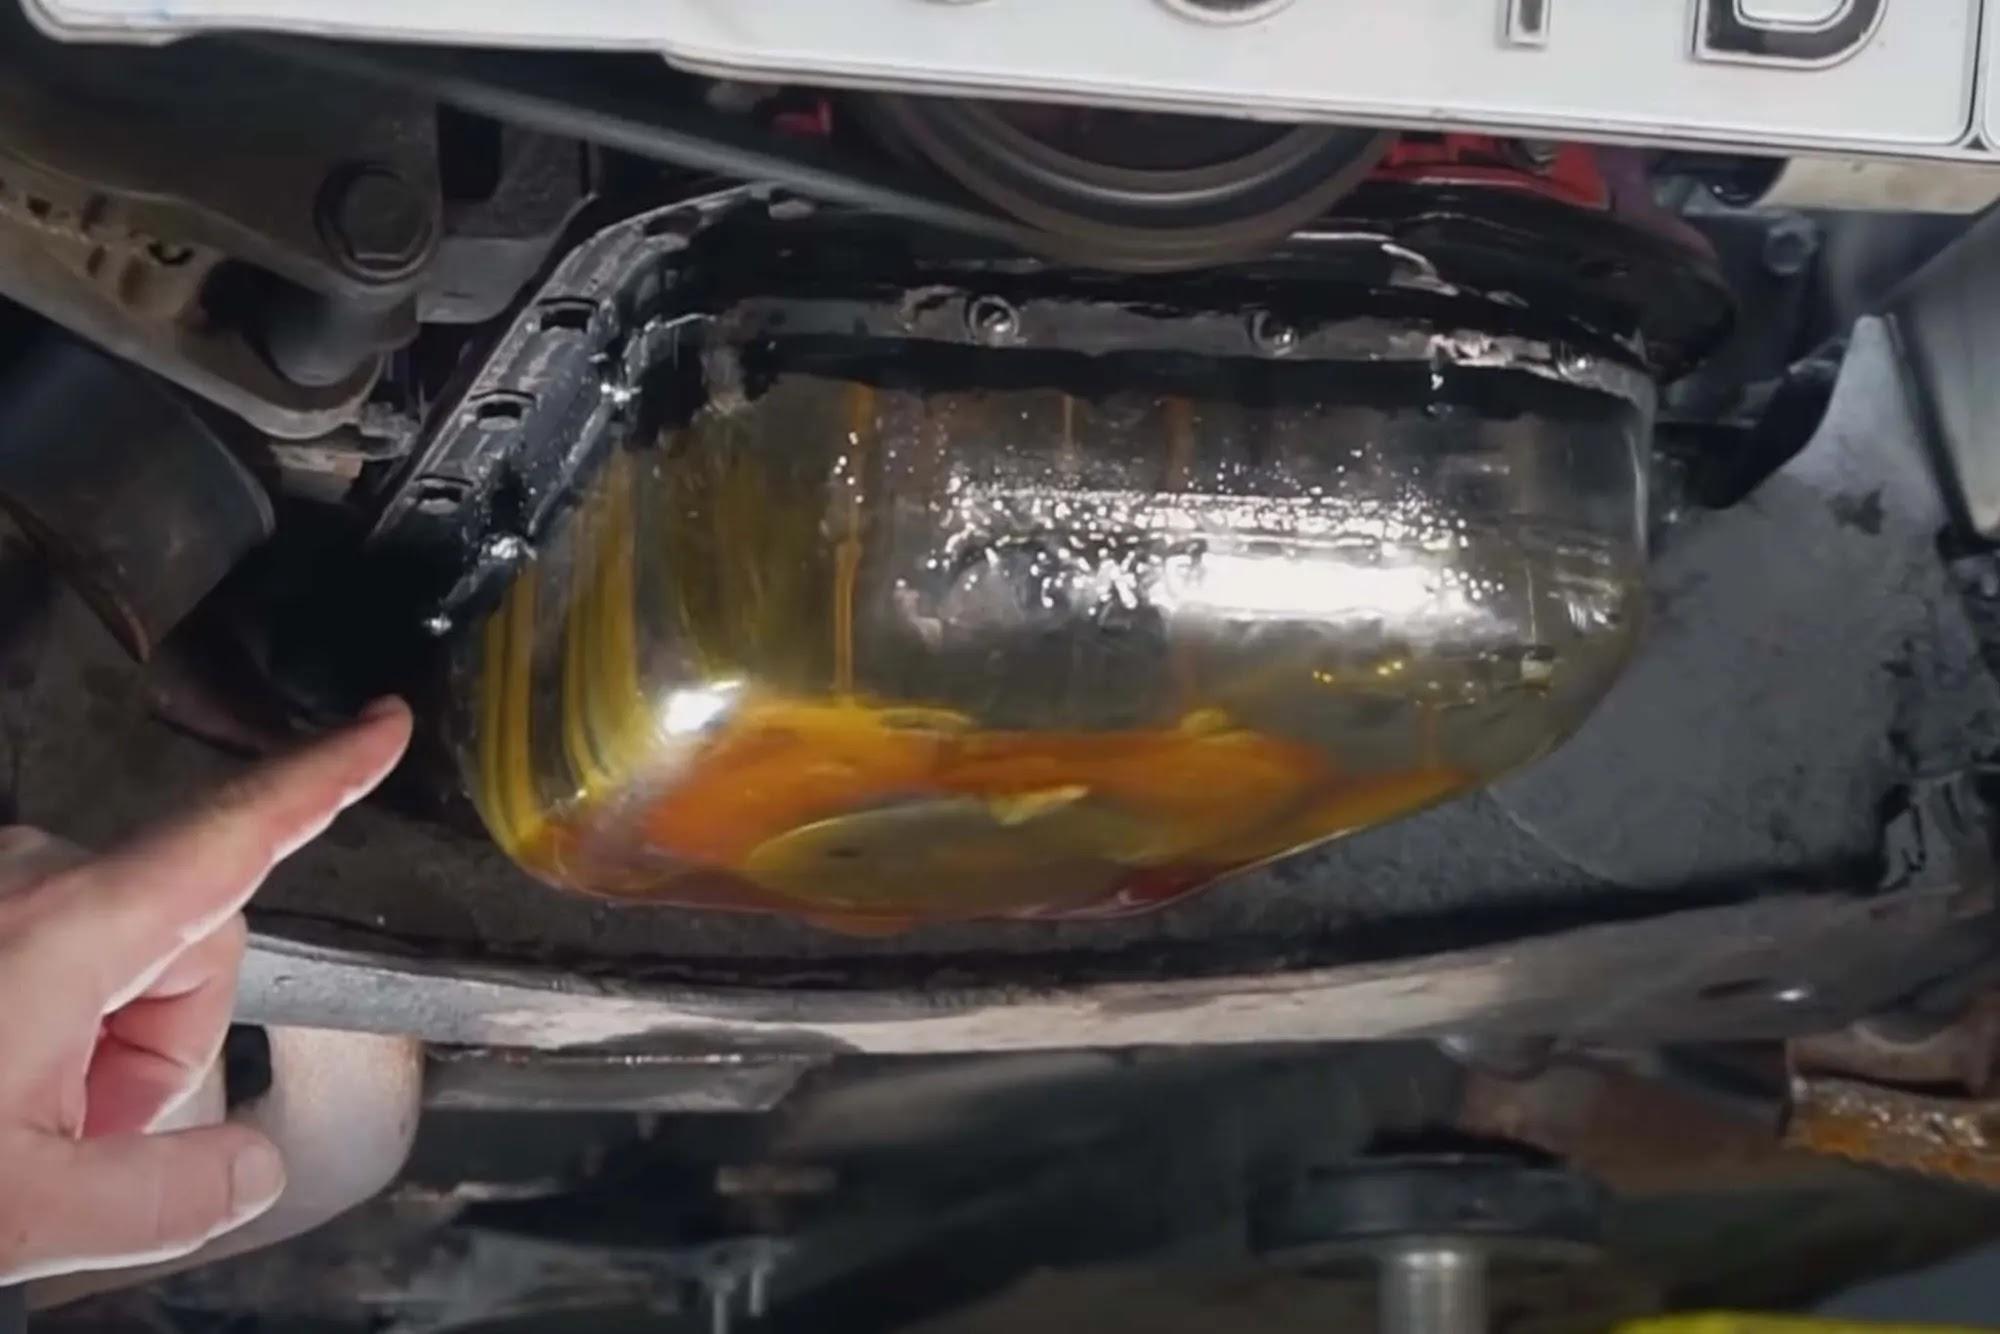 El cárter de aceite y la válvula transparentes le permiten ver el motor en funcionamiento